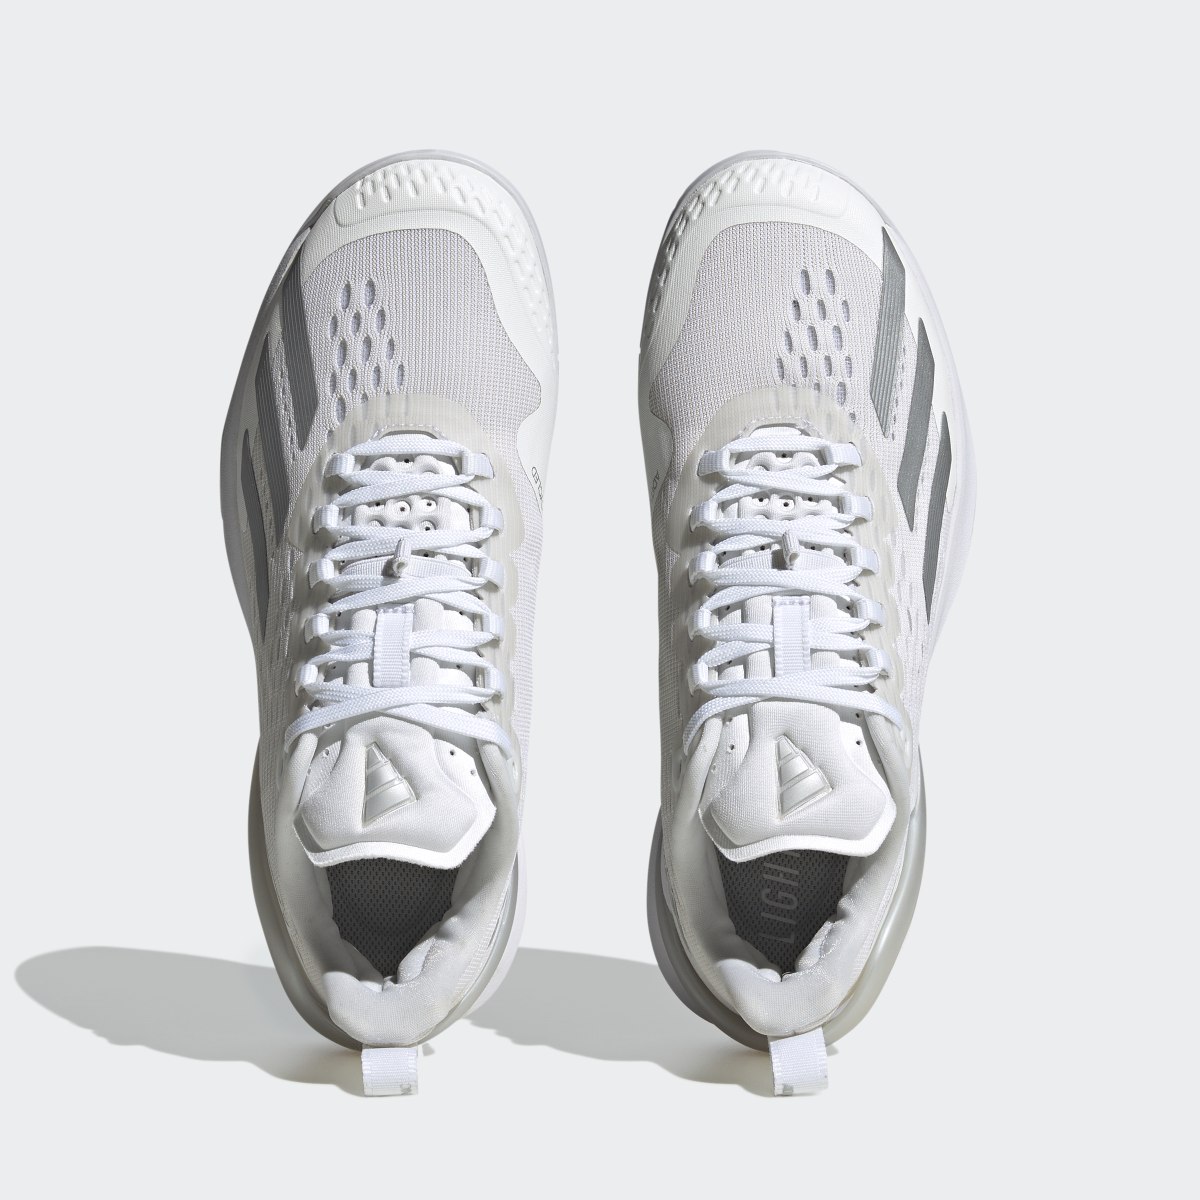 Adidas adizero Cybersonic Tennis Shoes. 6